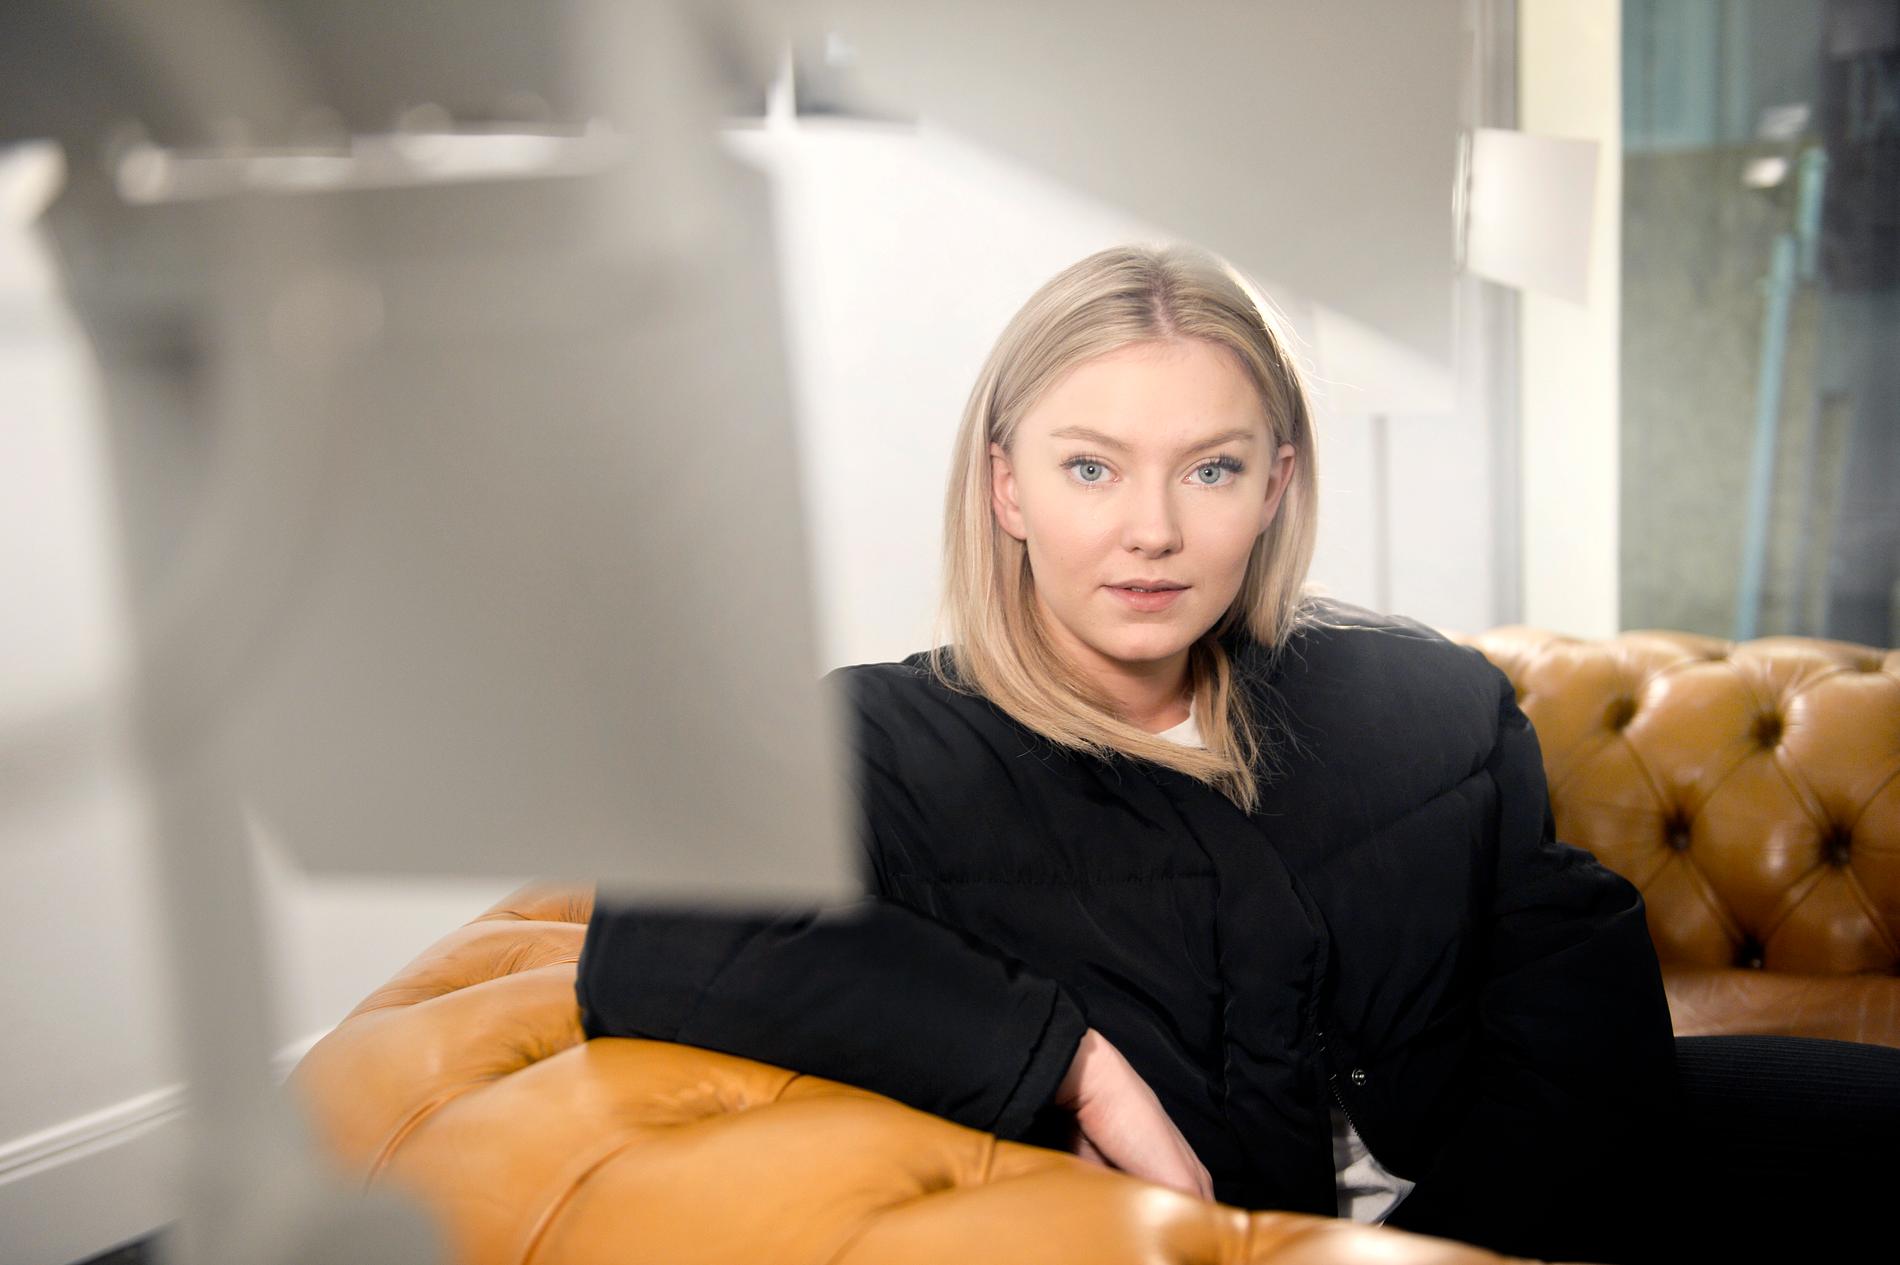 2015. Den första bilden av Astrid S i Aftonbladets arkiv.